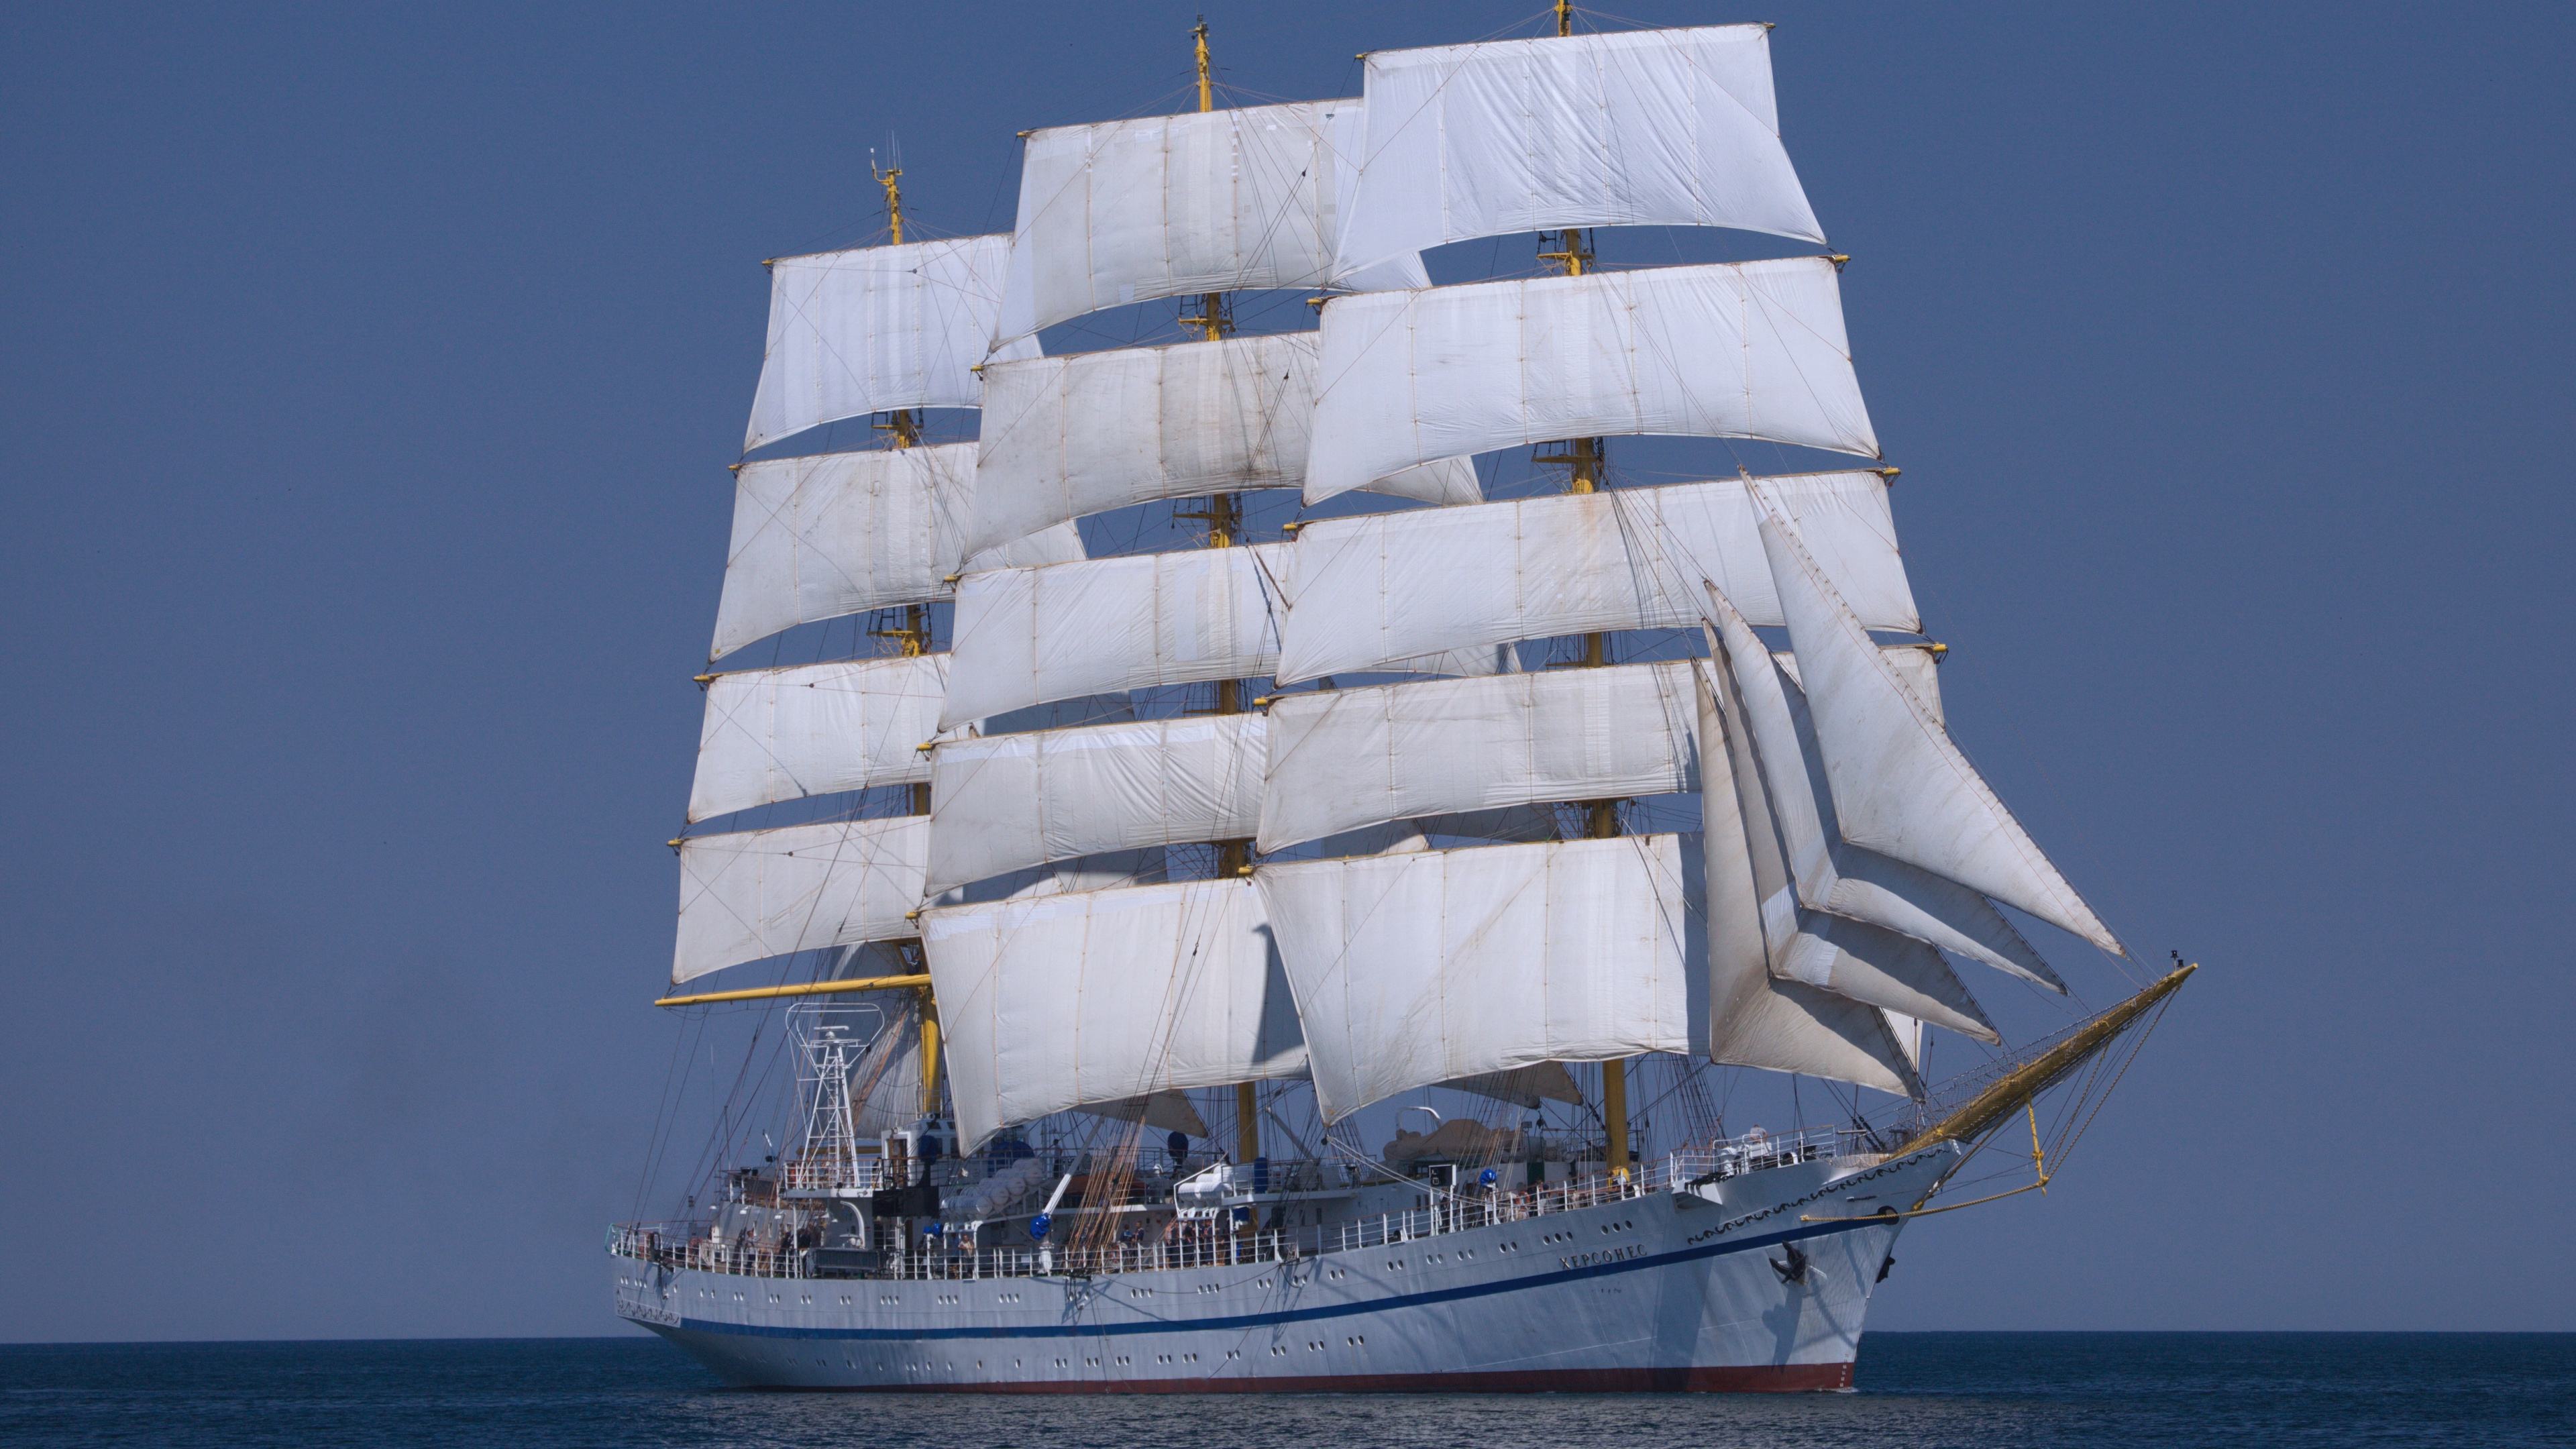 扬帆, 录像, 高船, Barquentine, 三桅帆船 壁纸 3840x2160 允许